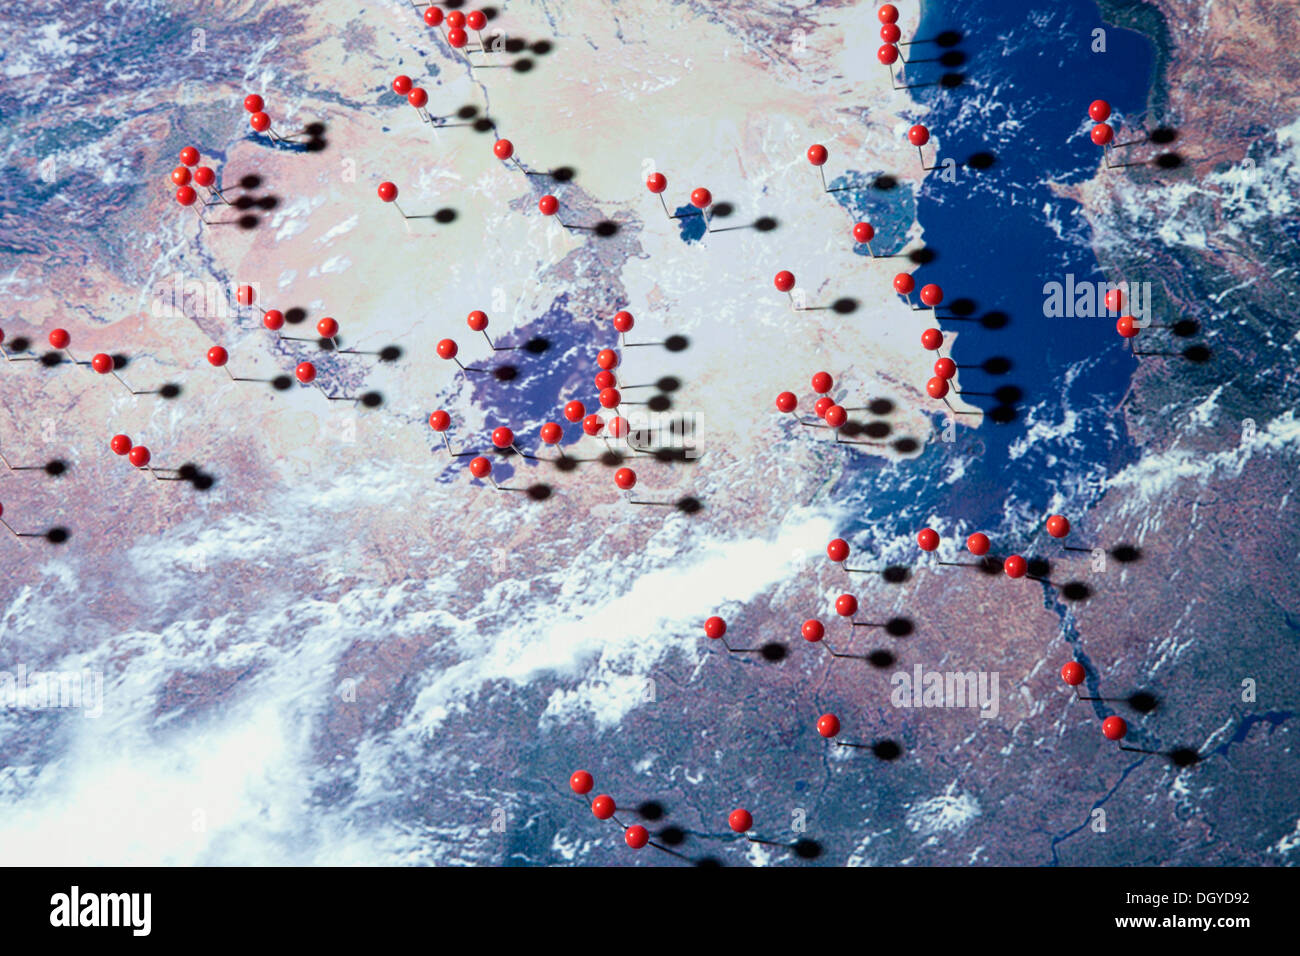 Ein Satellitenbild der Erde mit Stecknadeln an verschiedenen Standorten, digital composite Stockfoto